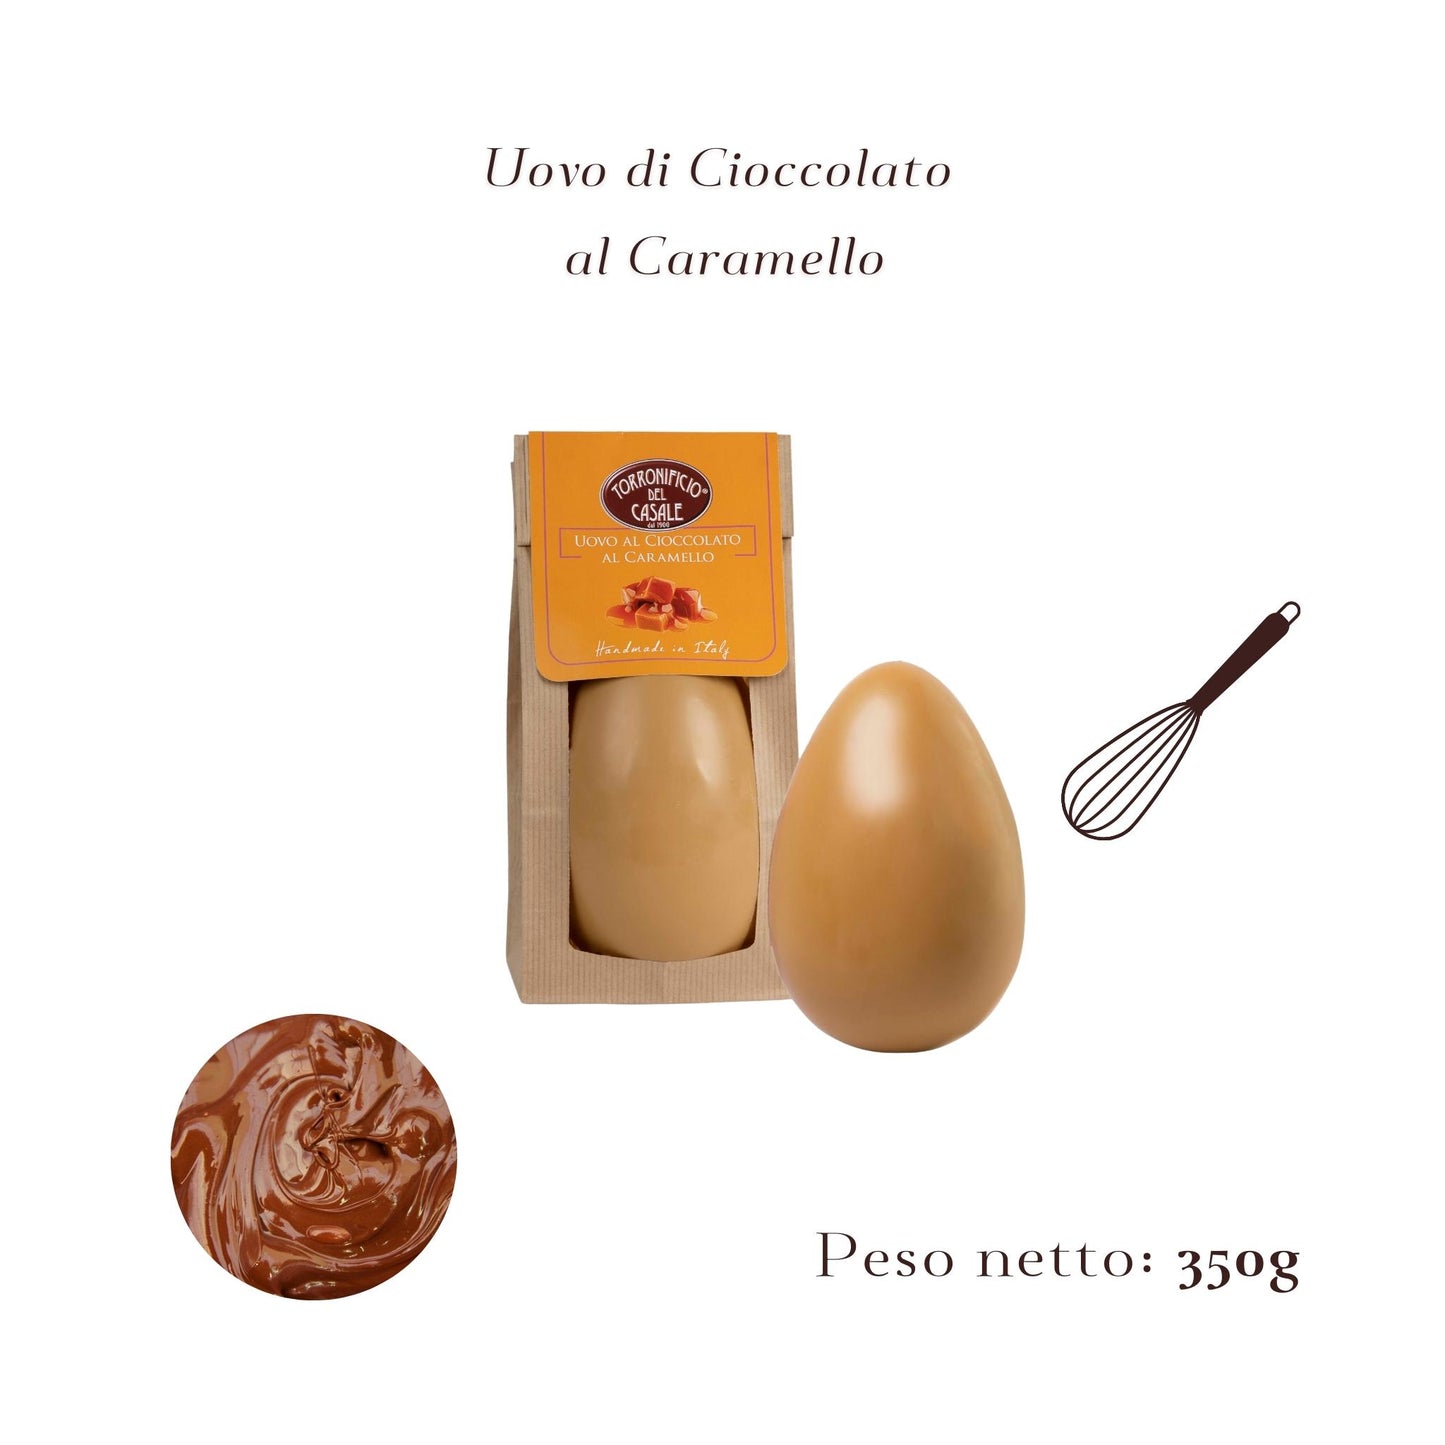 uovo-di-pasqua-al-caramello-artigianale-350g